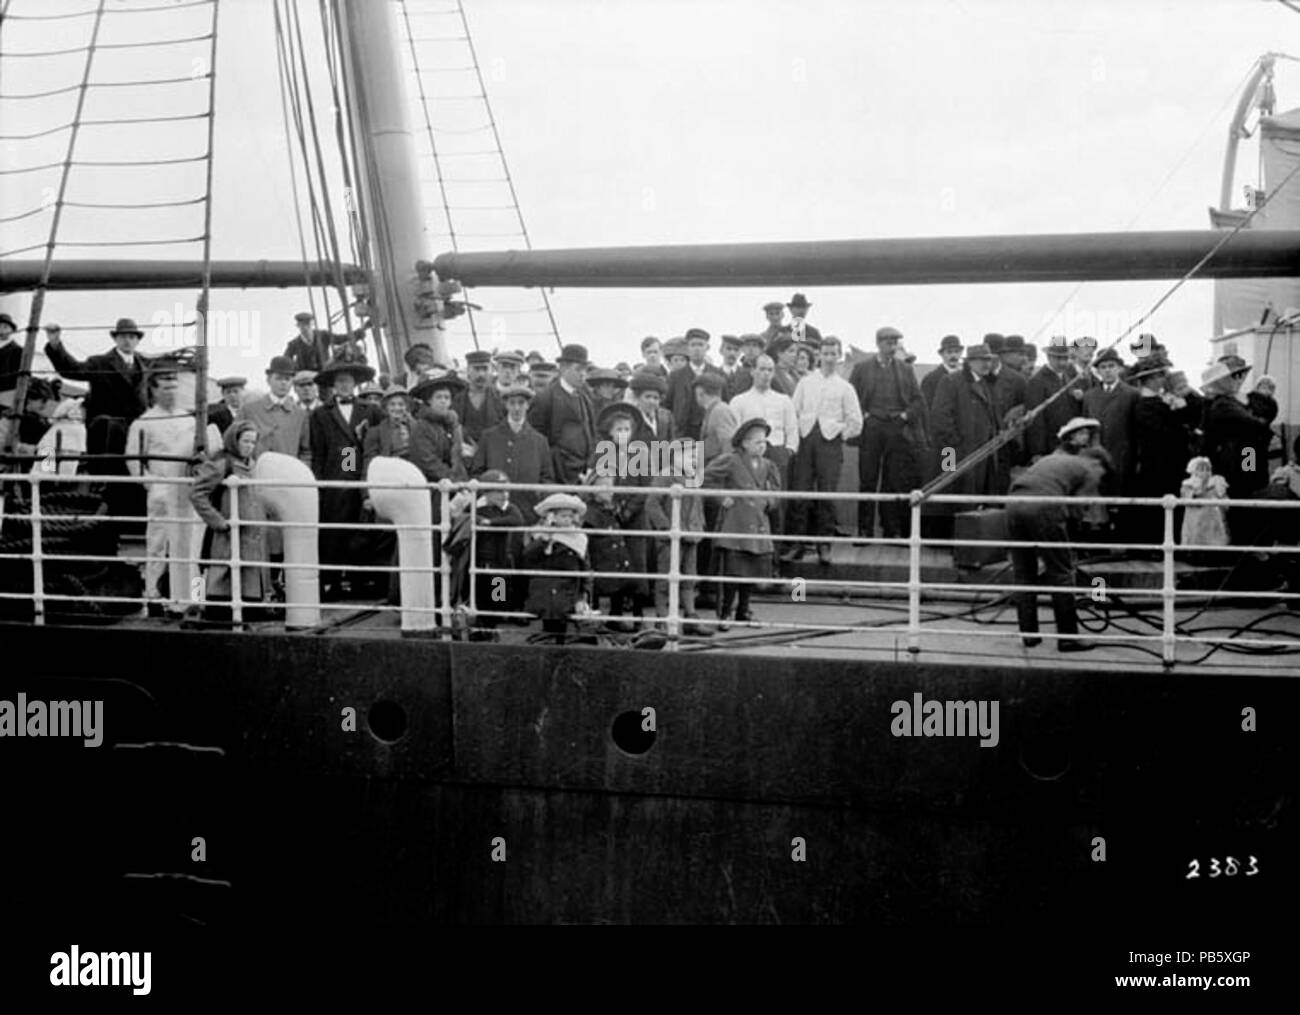 1572 Sistema di cottura a vapore sul Lago Champlain che arrivano al porto, Québec, Ottobre 1911 - Bateau à Vapeur Lac Champlain arrivant au port, Québec, oct. 1911 Foto Stock